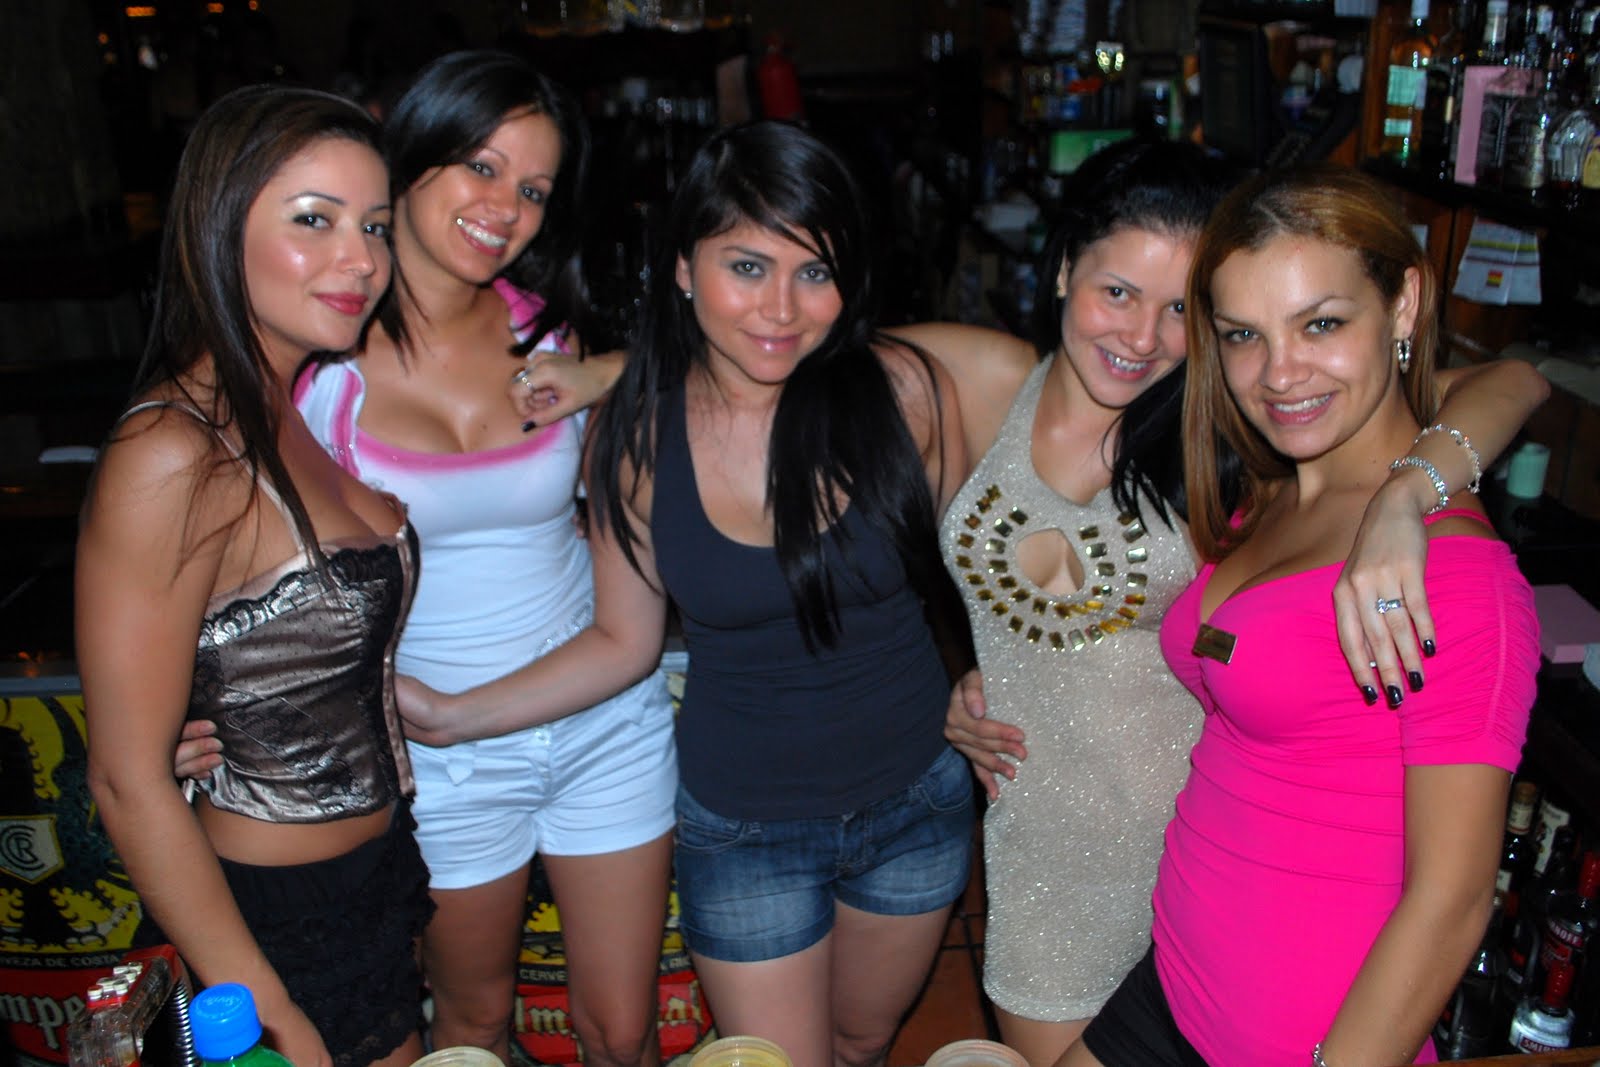  San Antonio, Valparaiso whores